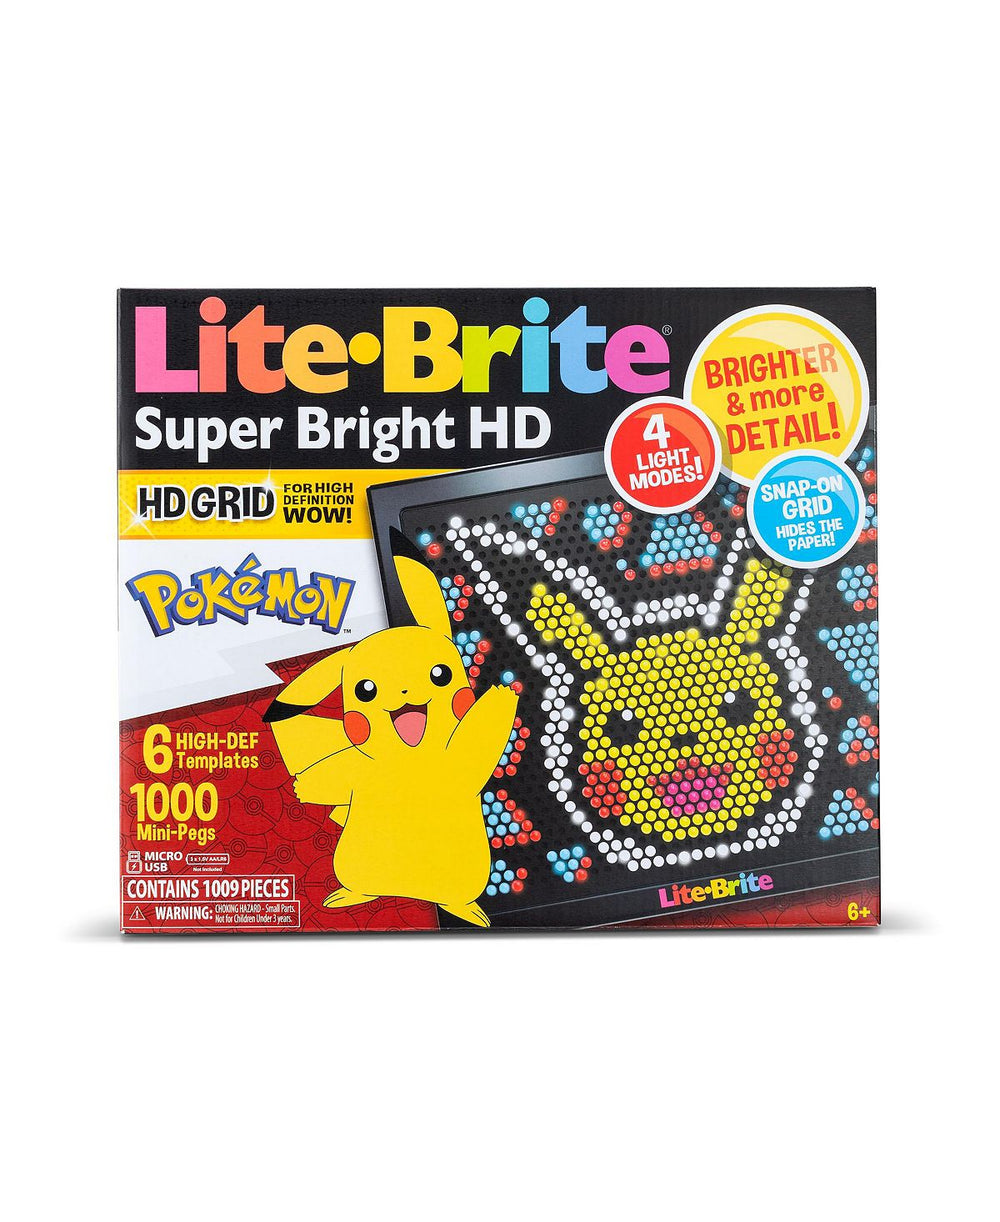 Lite Brite Super Bright HD Pokemon Edition - Interactive Art and Design Board